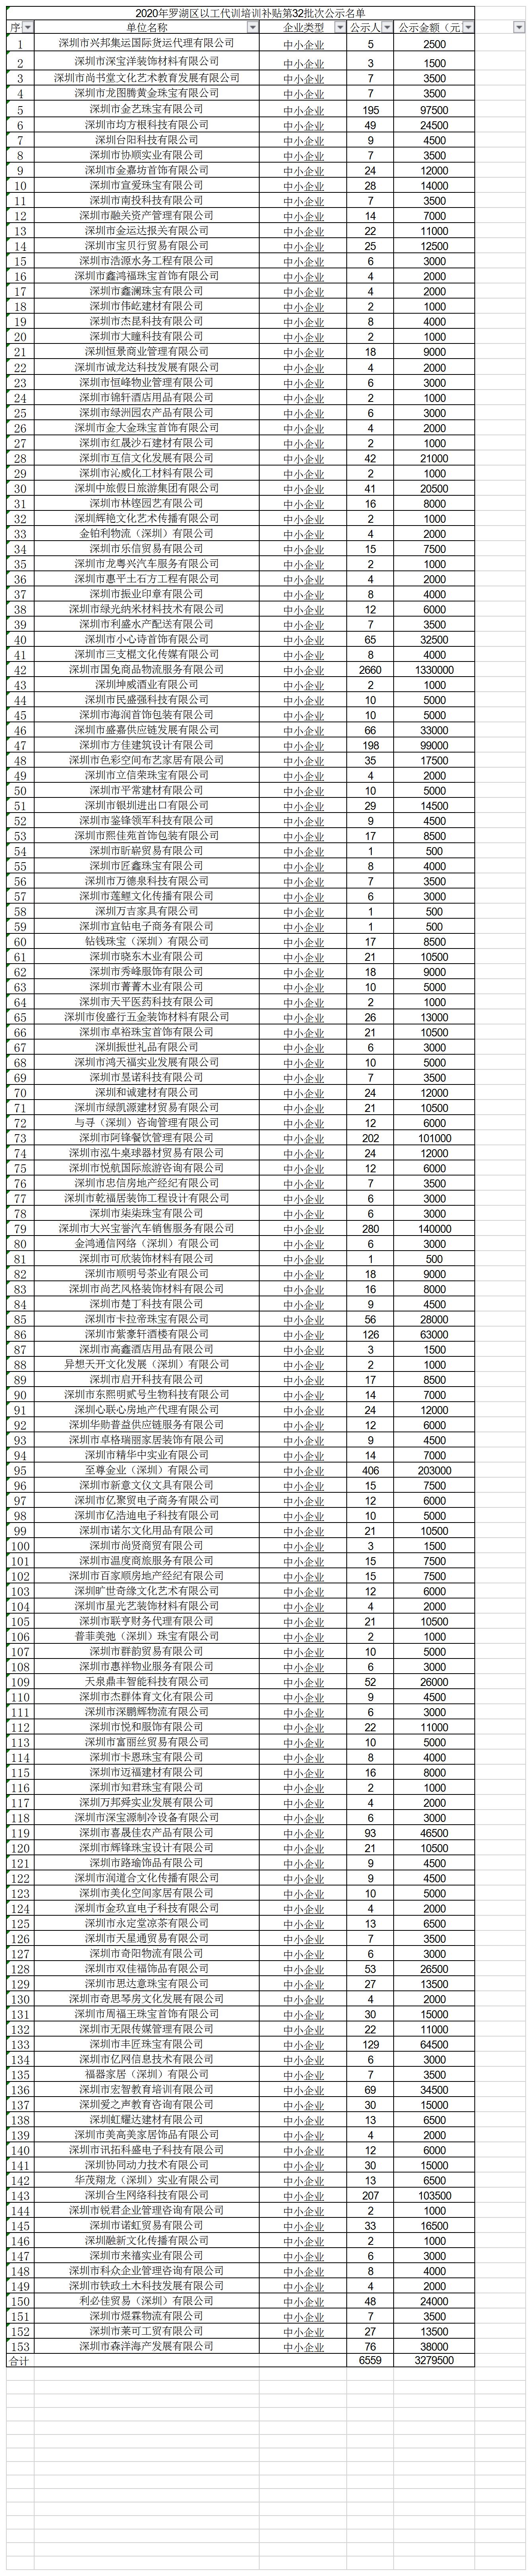 2020年深圳市罗湖区以工代训培训补贴第32批次公示名单.jpg